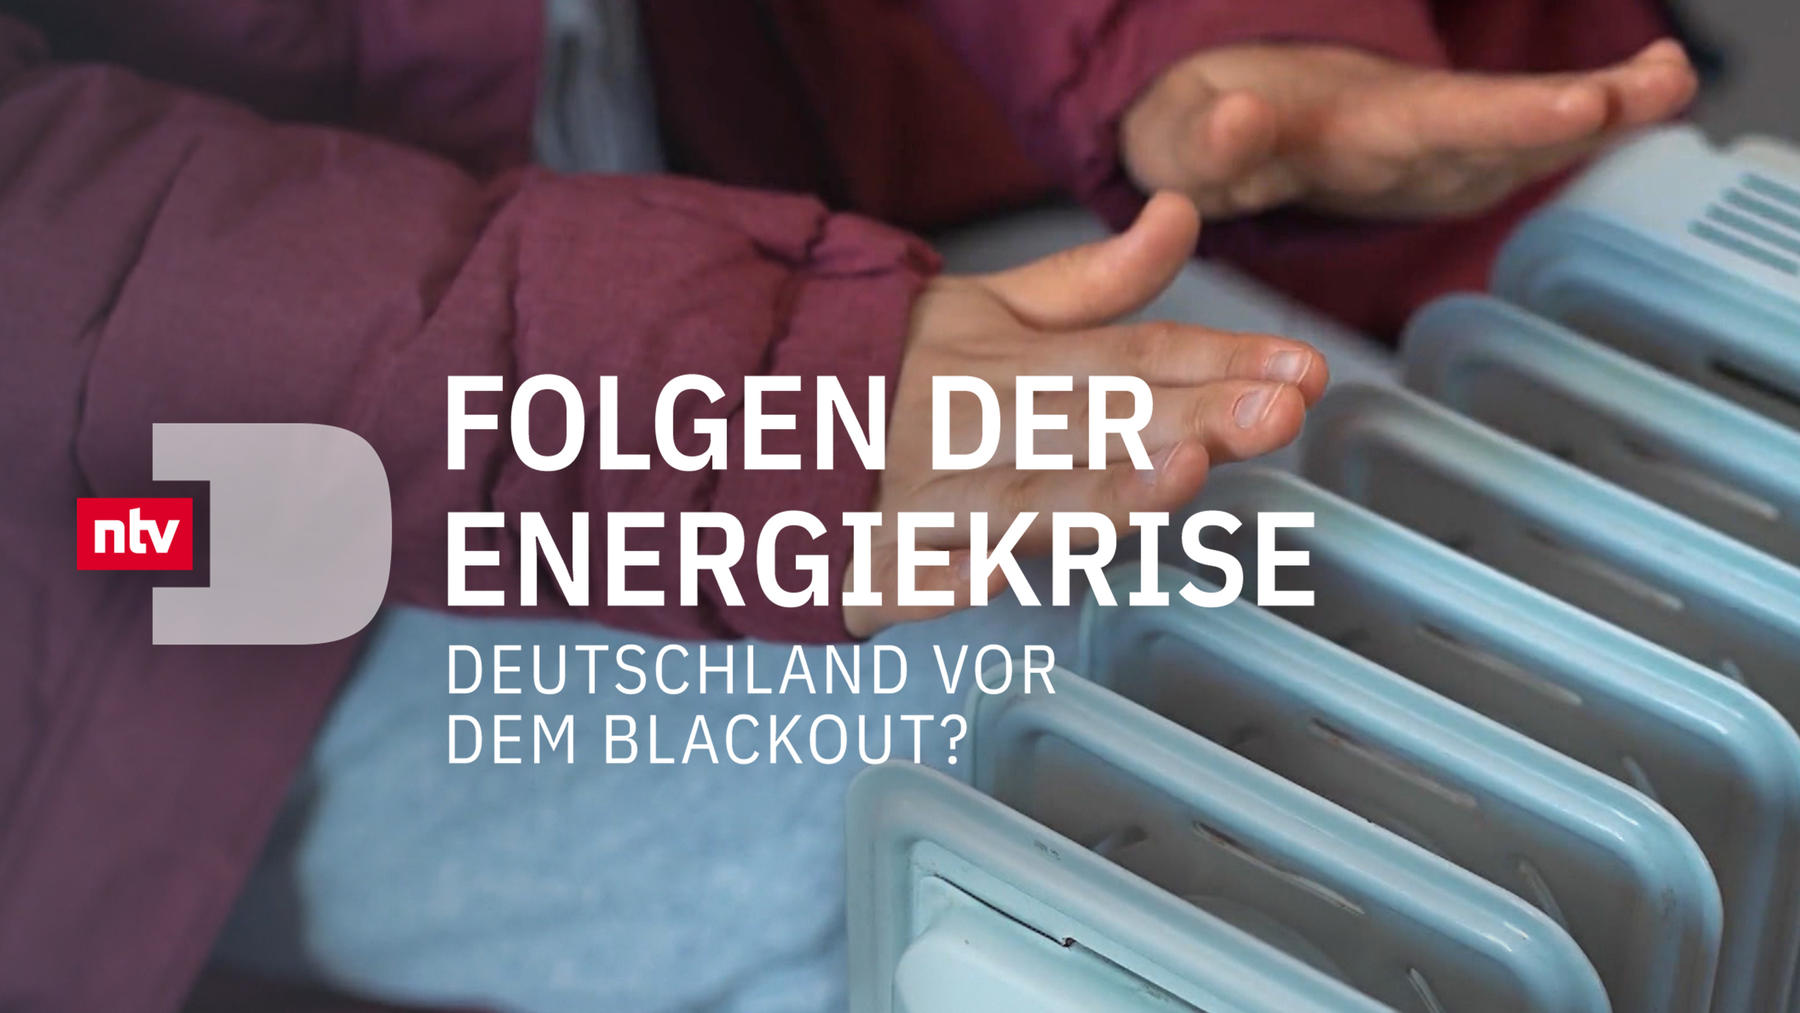 Folgen der Energiekrise - Deutschland vor dem Blackout?